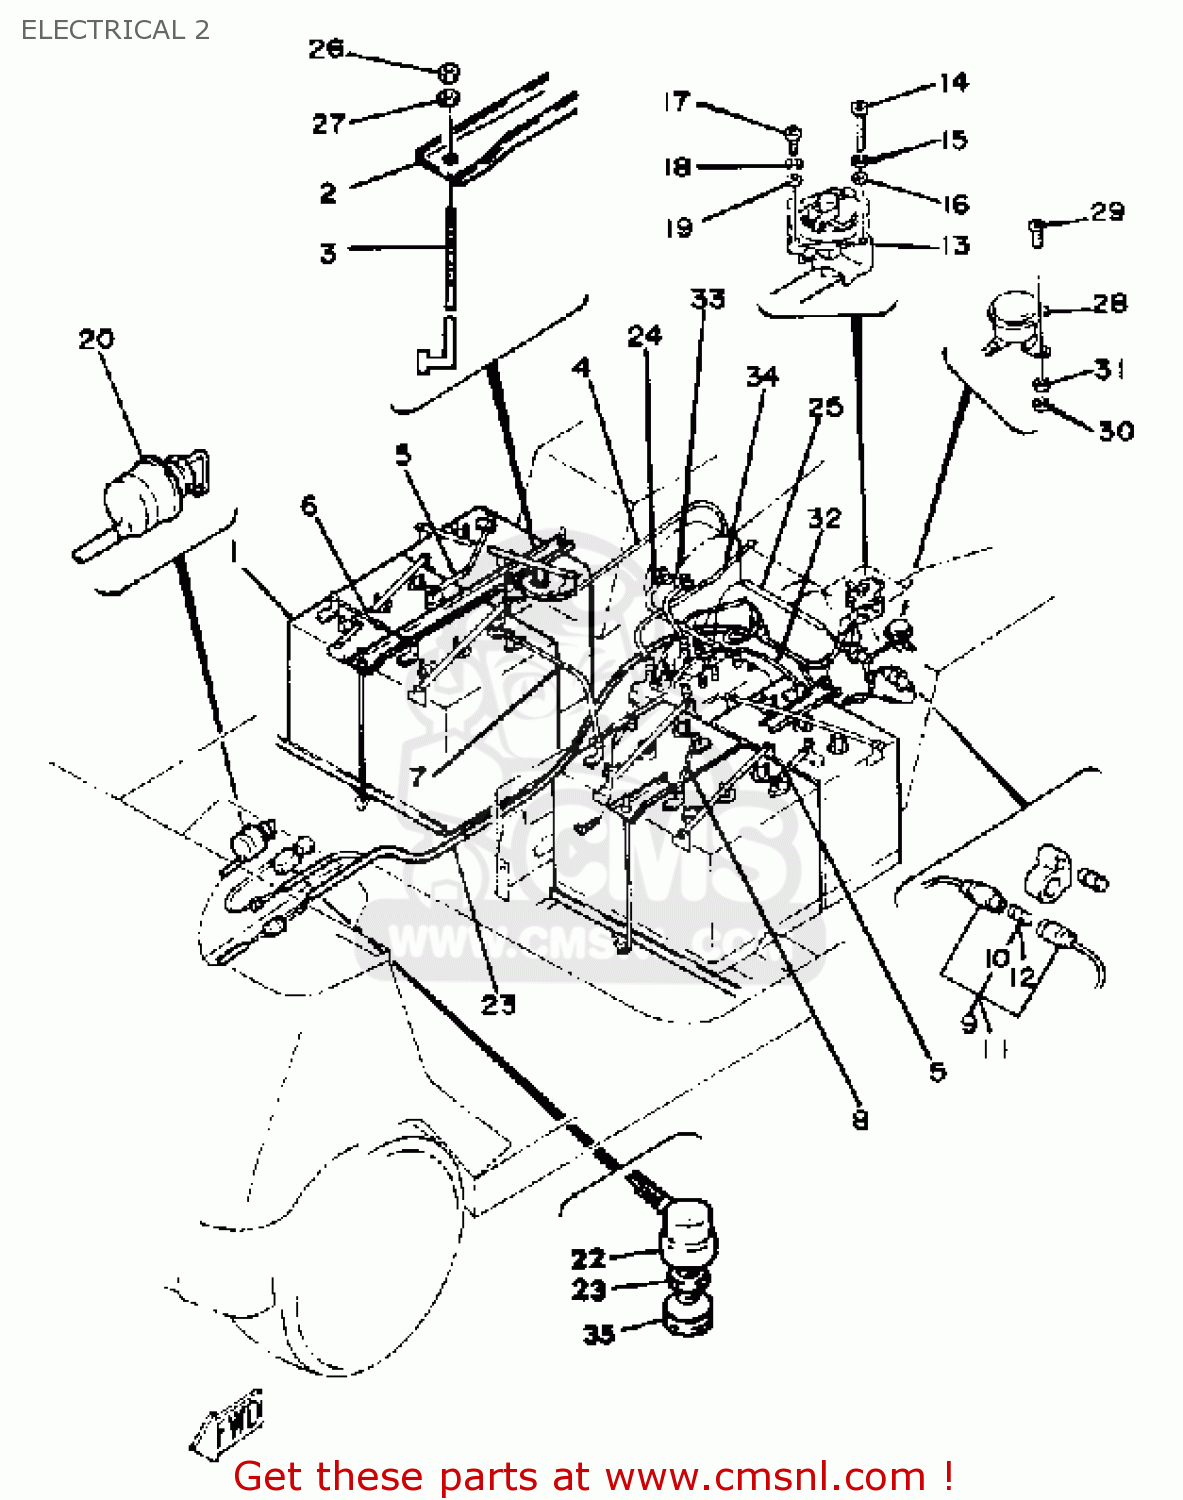 yamaha g16 golf cart parts diagram